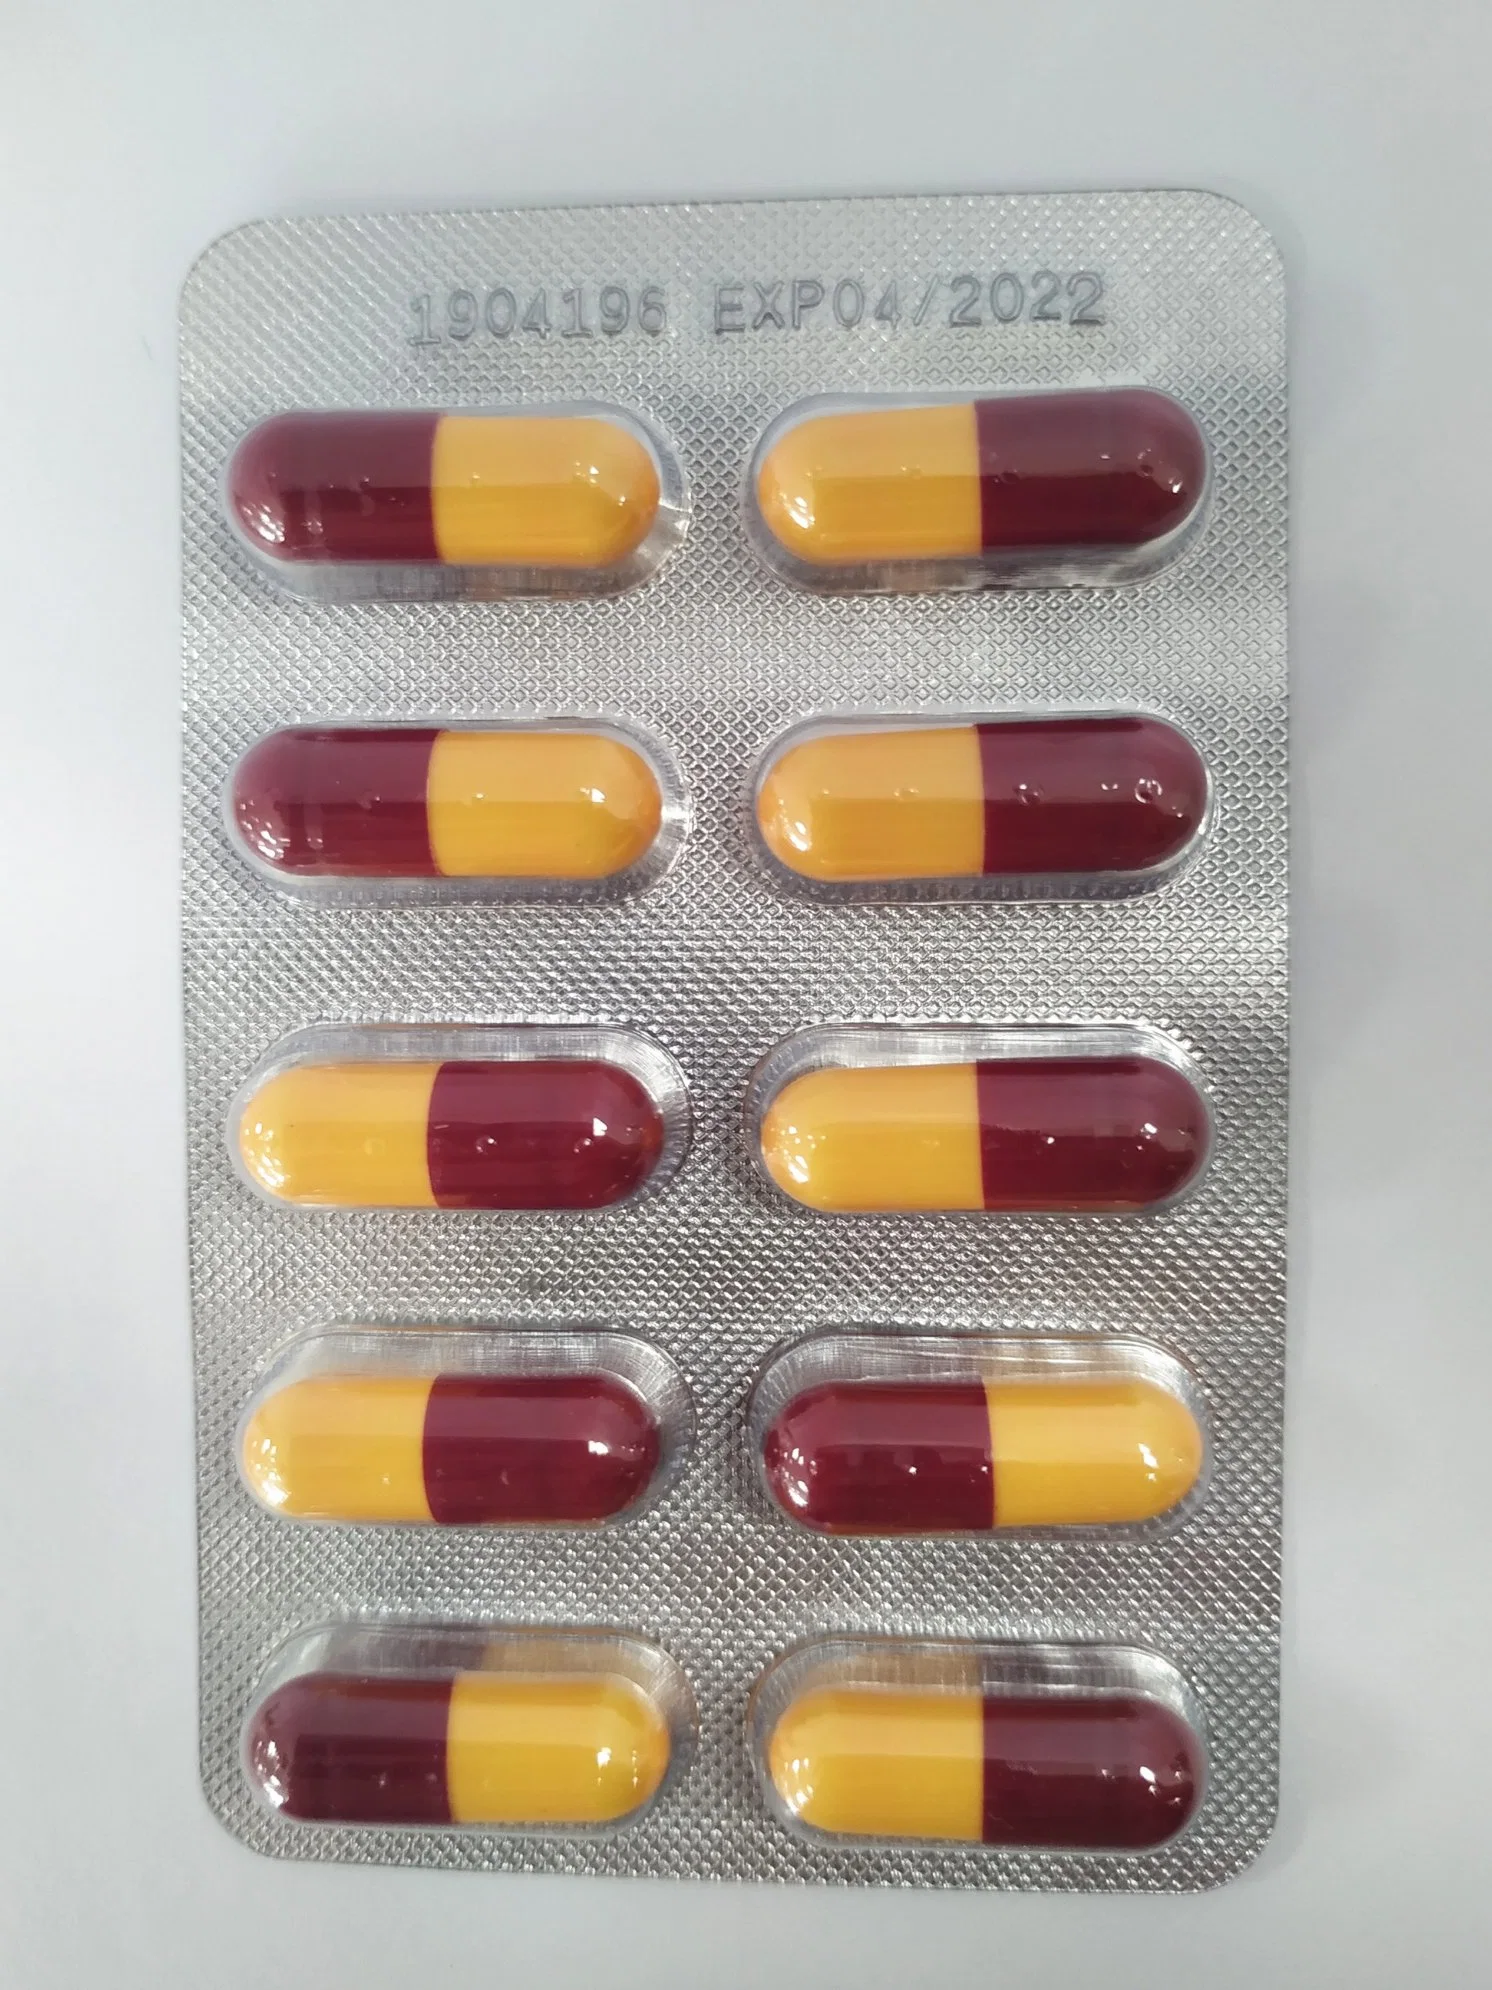 500 мг амоксициллин капсула высокого качества фармацевтических препаратов с сертификат